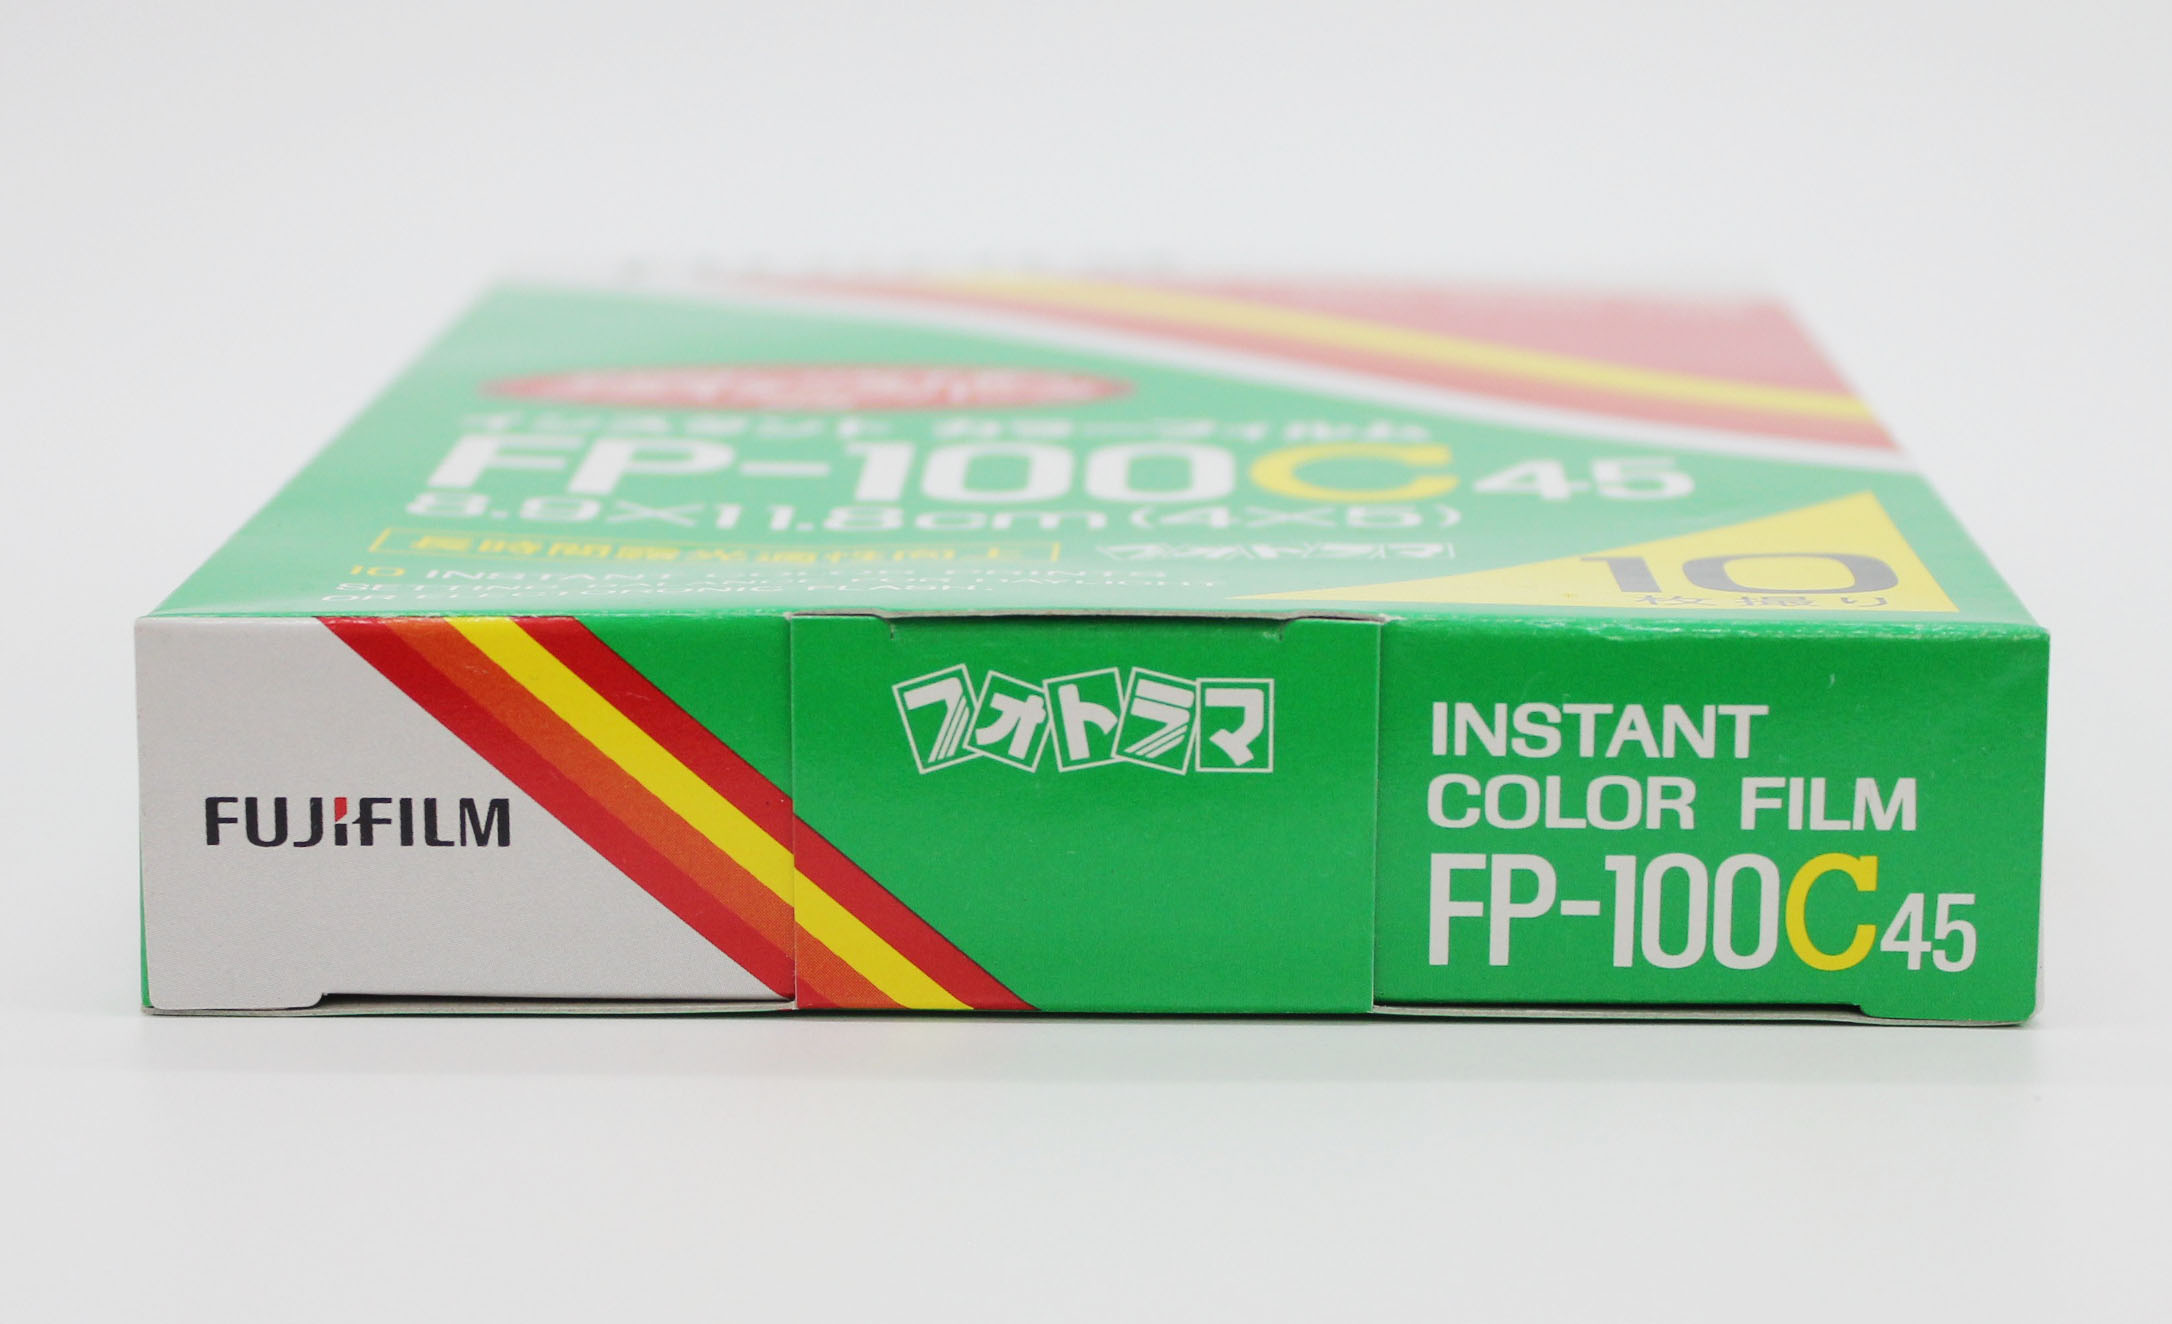  Fuji Fujifilm FP-100C45 4x5 8.9x11.8cm Instant Color Film (EXP 10/2009) Photo 5